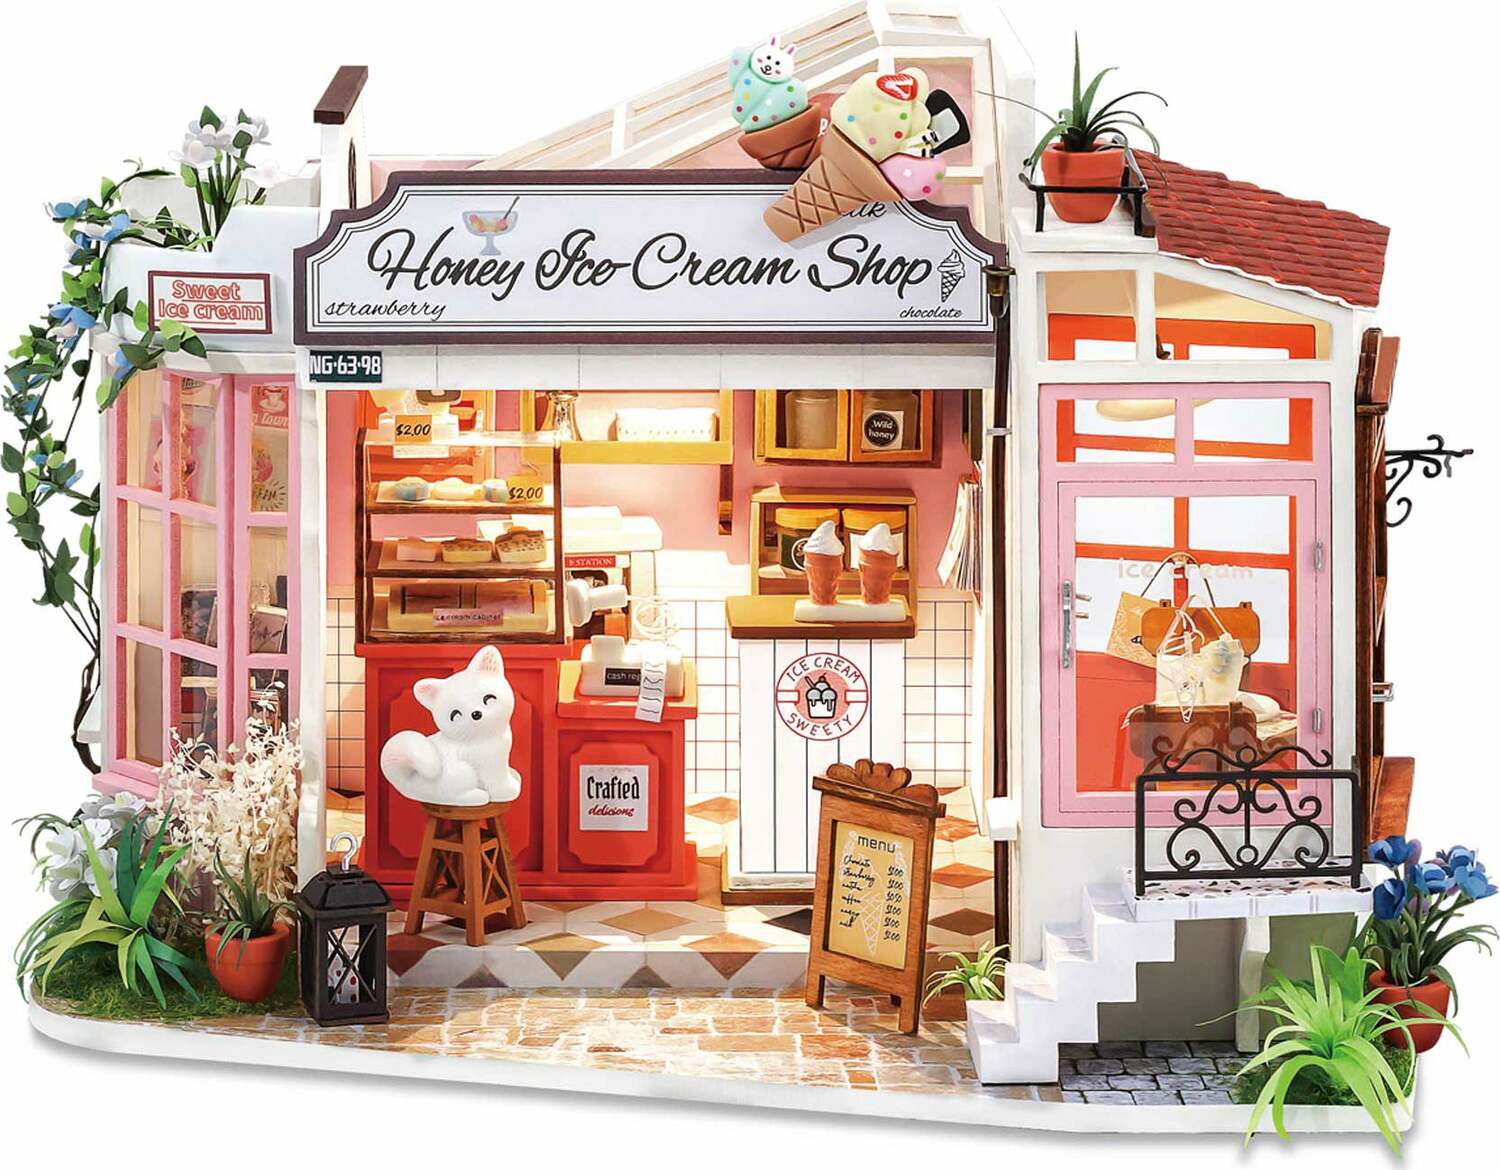 Honey Ice-Cream Shop